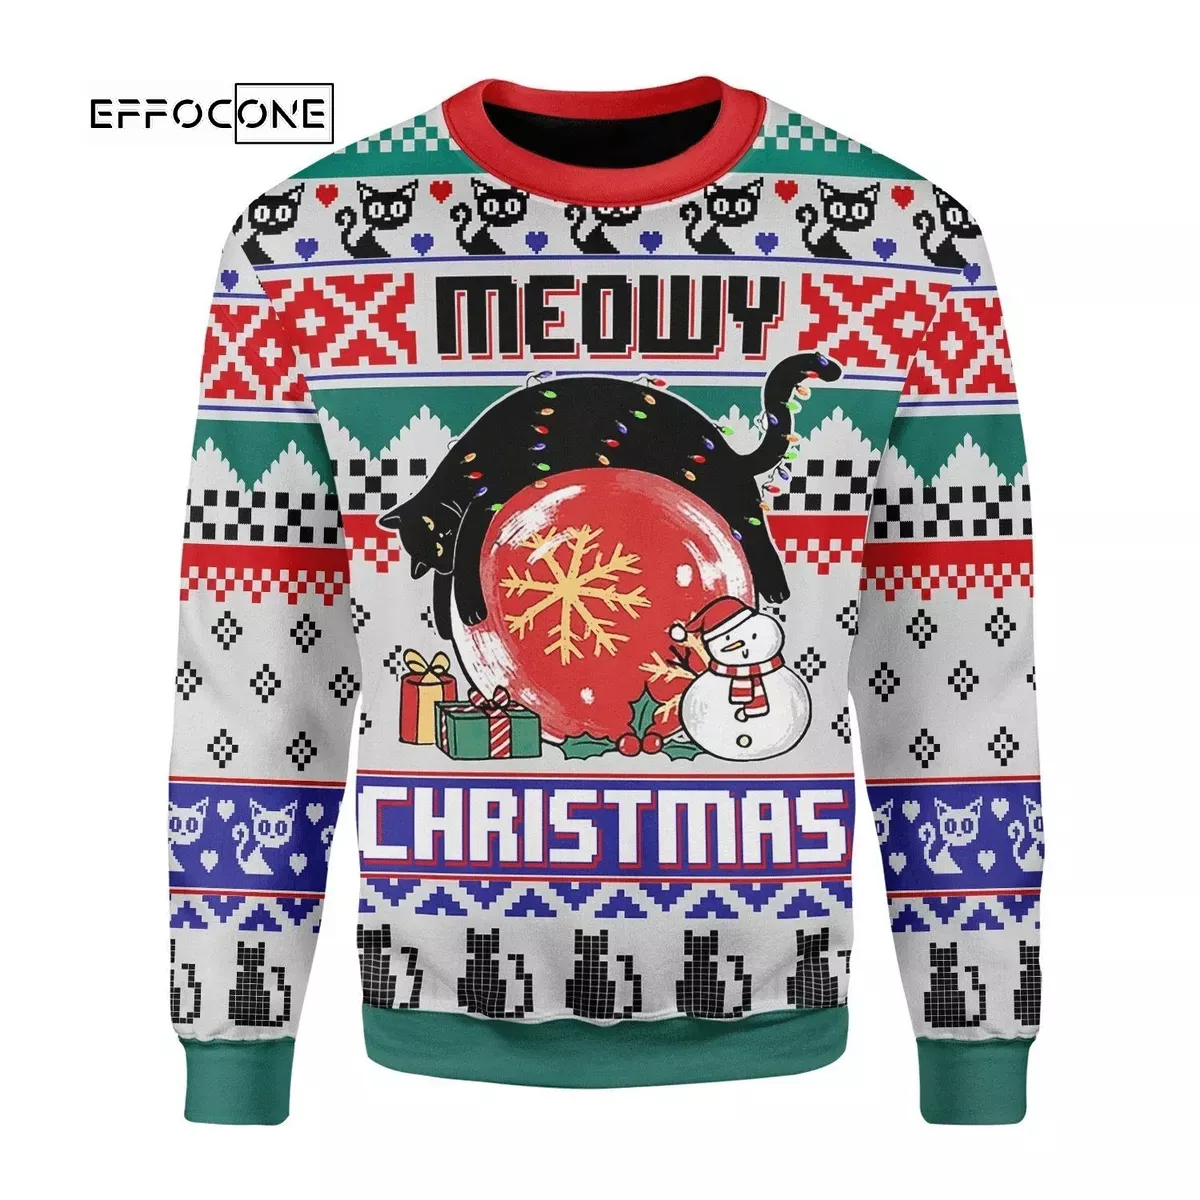 Meoy Christmas Ugly Christmas Sweater